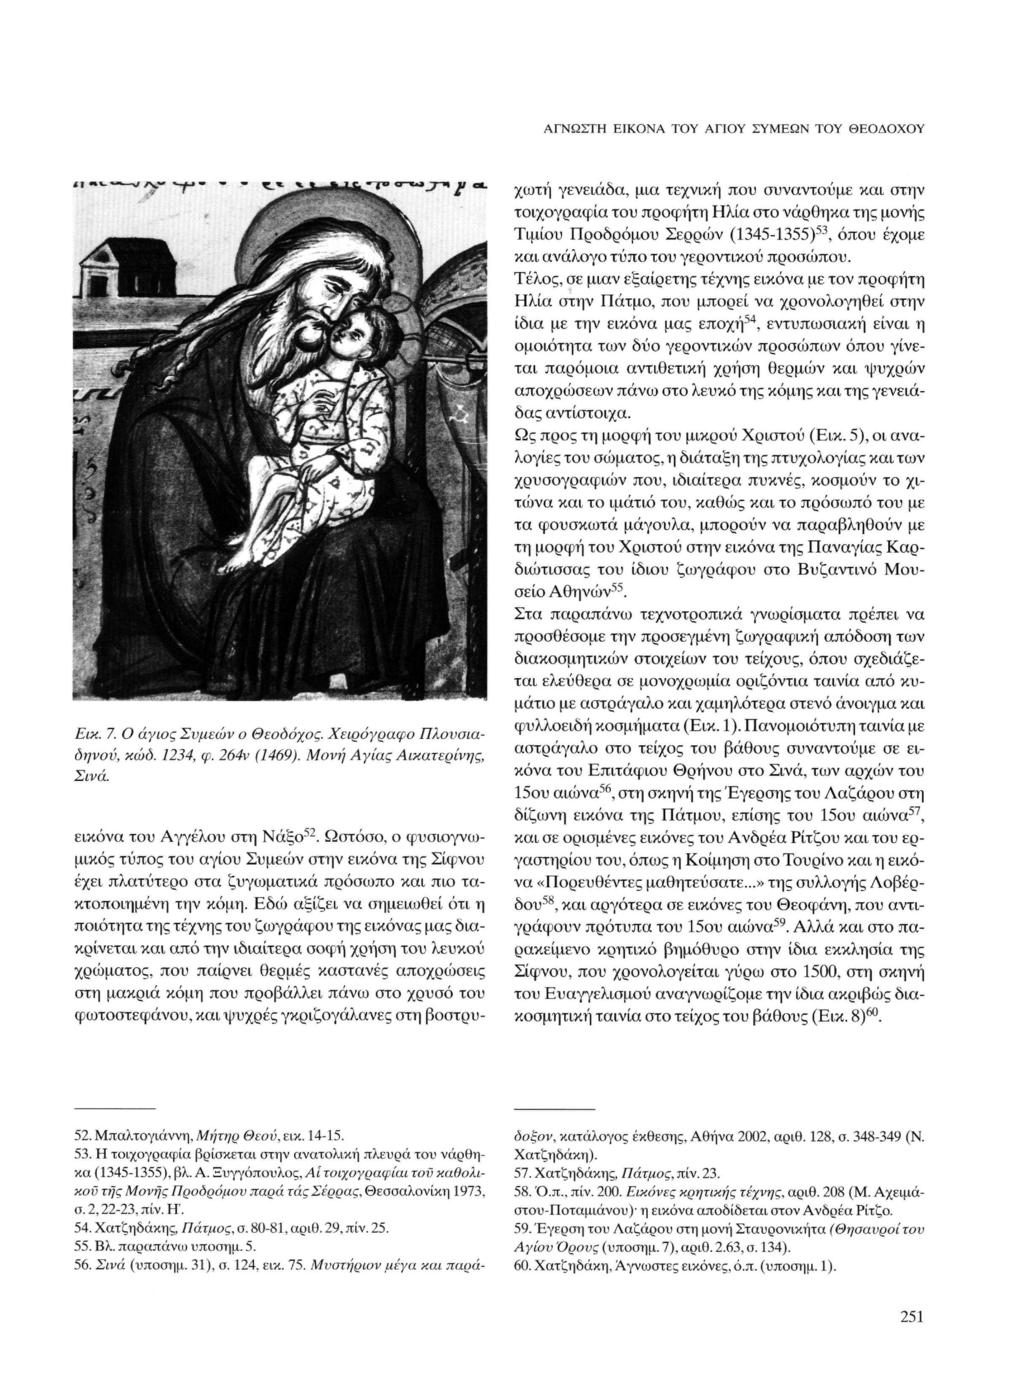 ΑΓΝΩΣΤΗ ΕΙΚΟΝΑ ΤΟΥ ΑΓΙΟΥ ΣΥΜΕΩΝ ΤΟΥ ΘΕΟΔΟΧΟΥ Εικ. 7. Ο άγιος Συμεών ο Θεοόόχος. Χειρόγραφο Πλονσιαοηνον, κωδ. 1234, φ. 264ν (1469). Μονή Αγίας Αικατερίνης, Σινά. εικόνα του Αγγέλου στη Νάξο 52.